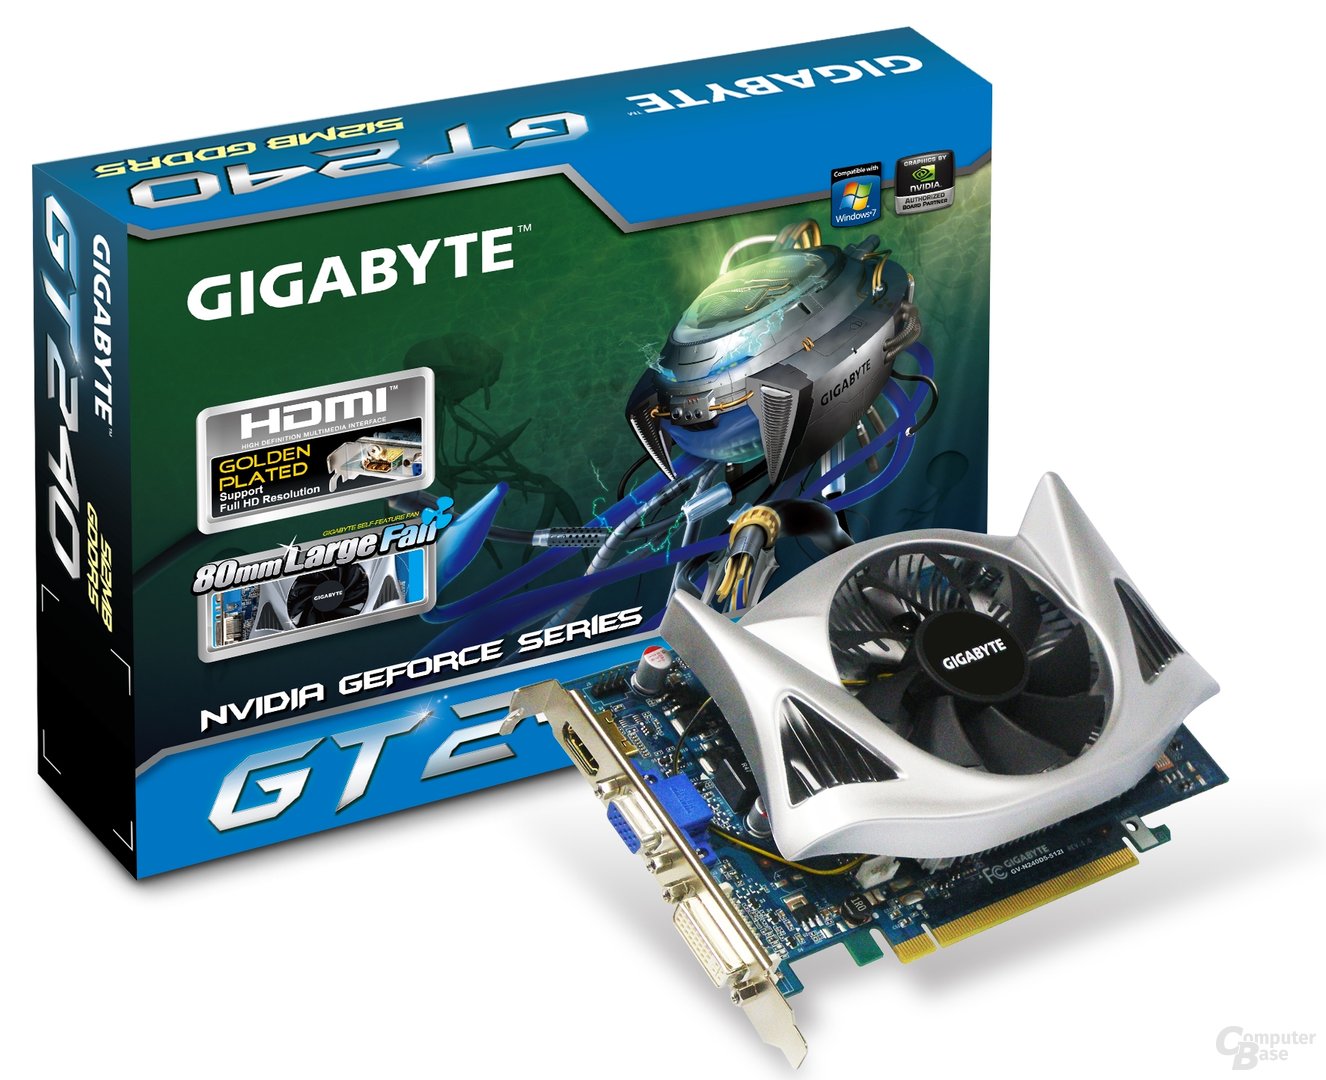 Gigabyte GeForce GT 240